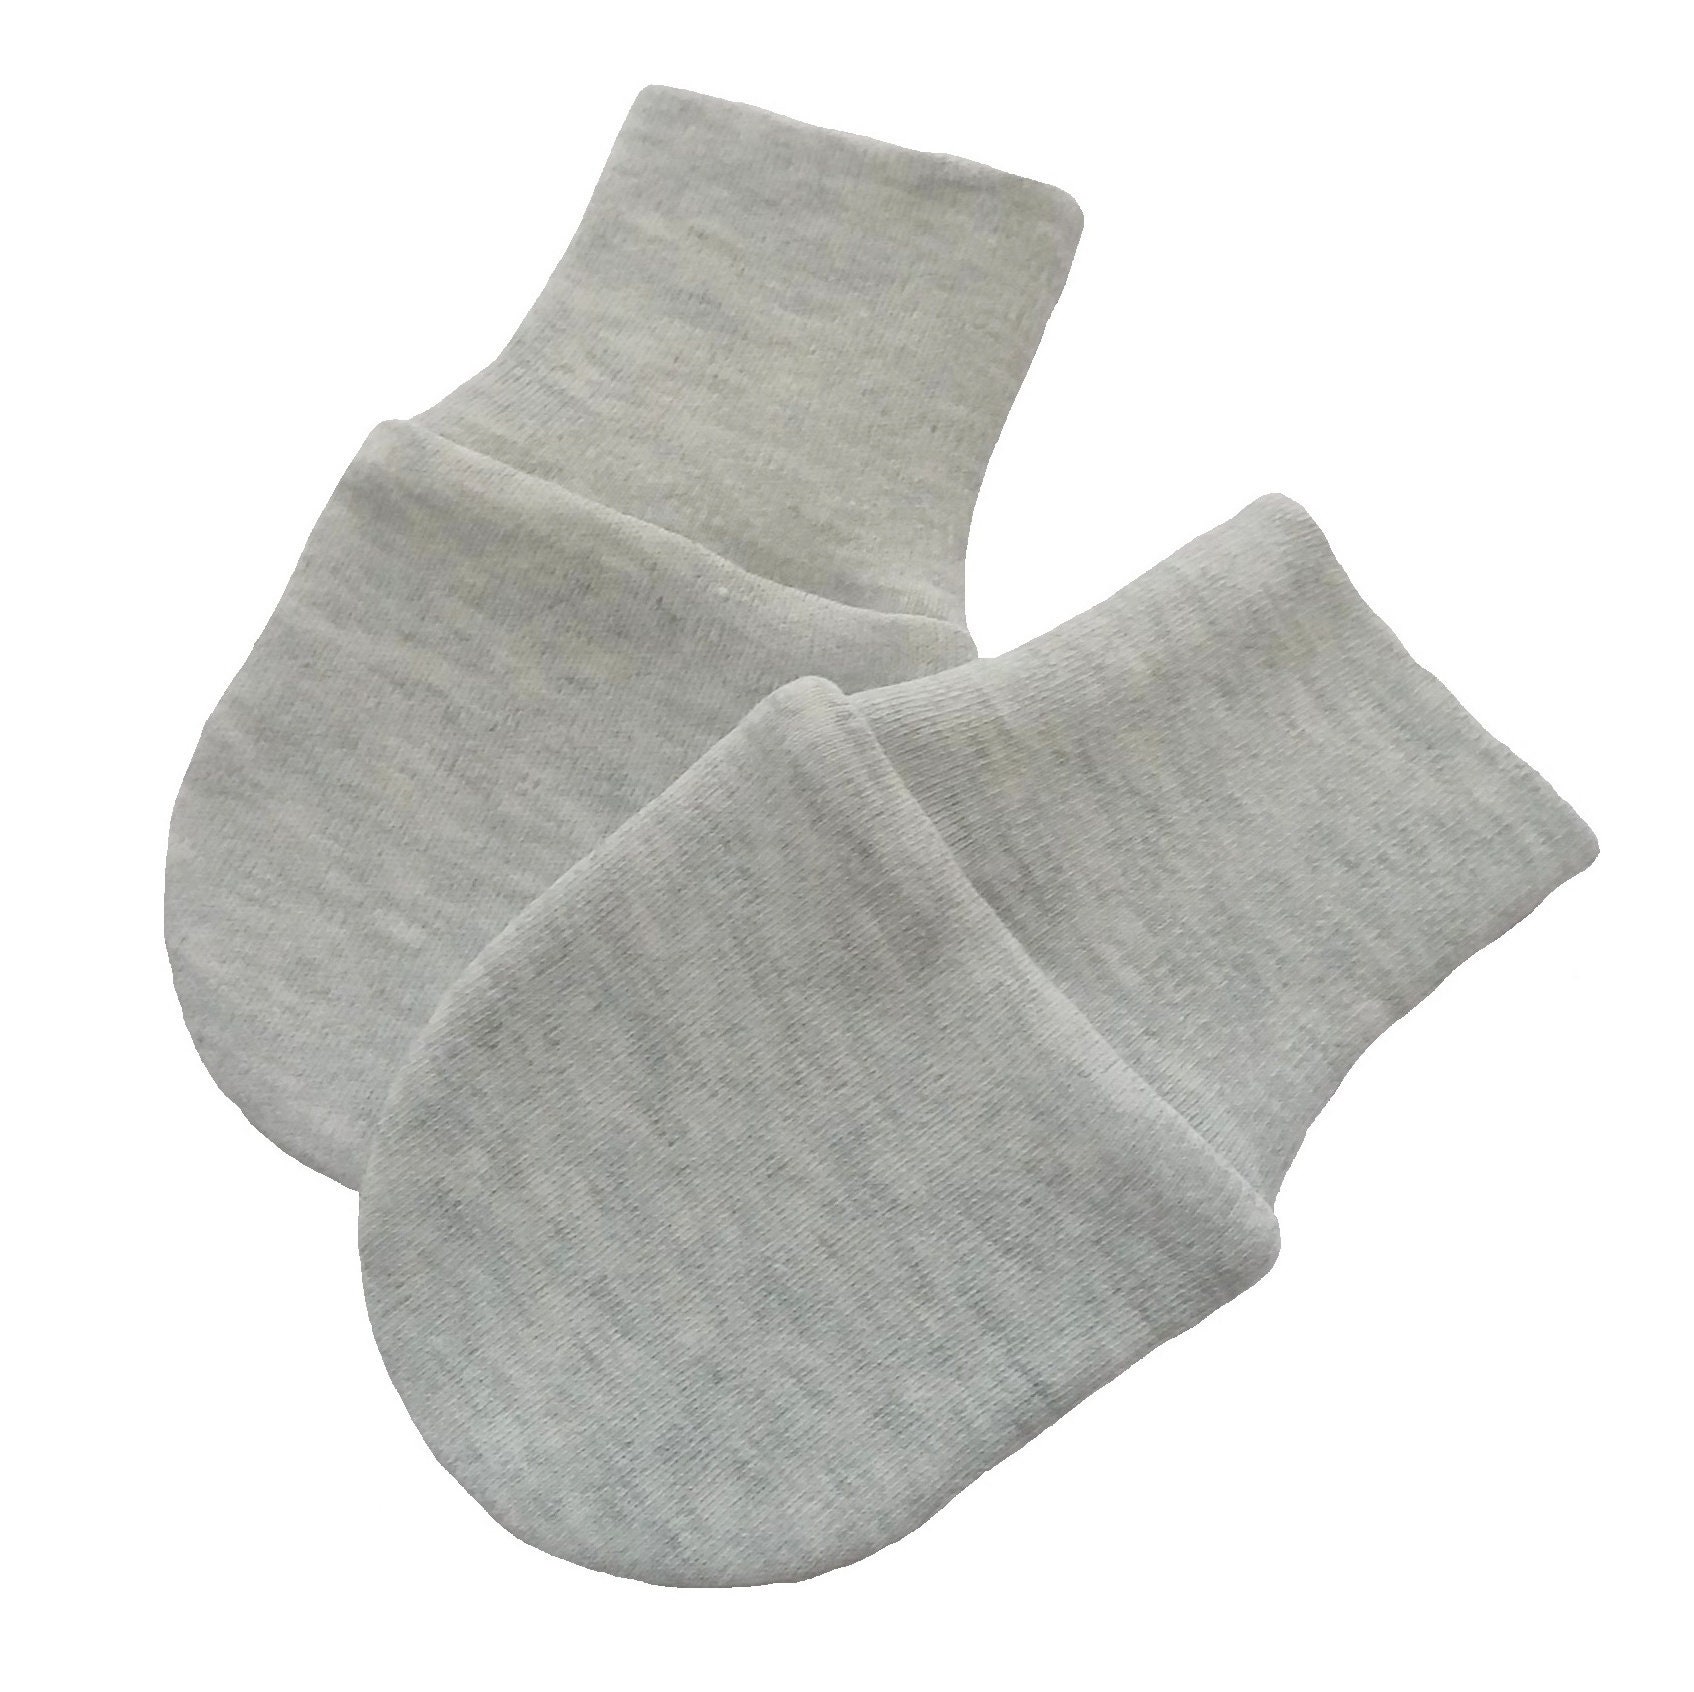 9 Pairs Newborn Baby Cotton Mittens No Scratch Unisex Baby Gloves for 0-6 Months 